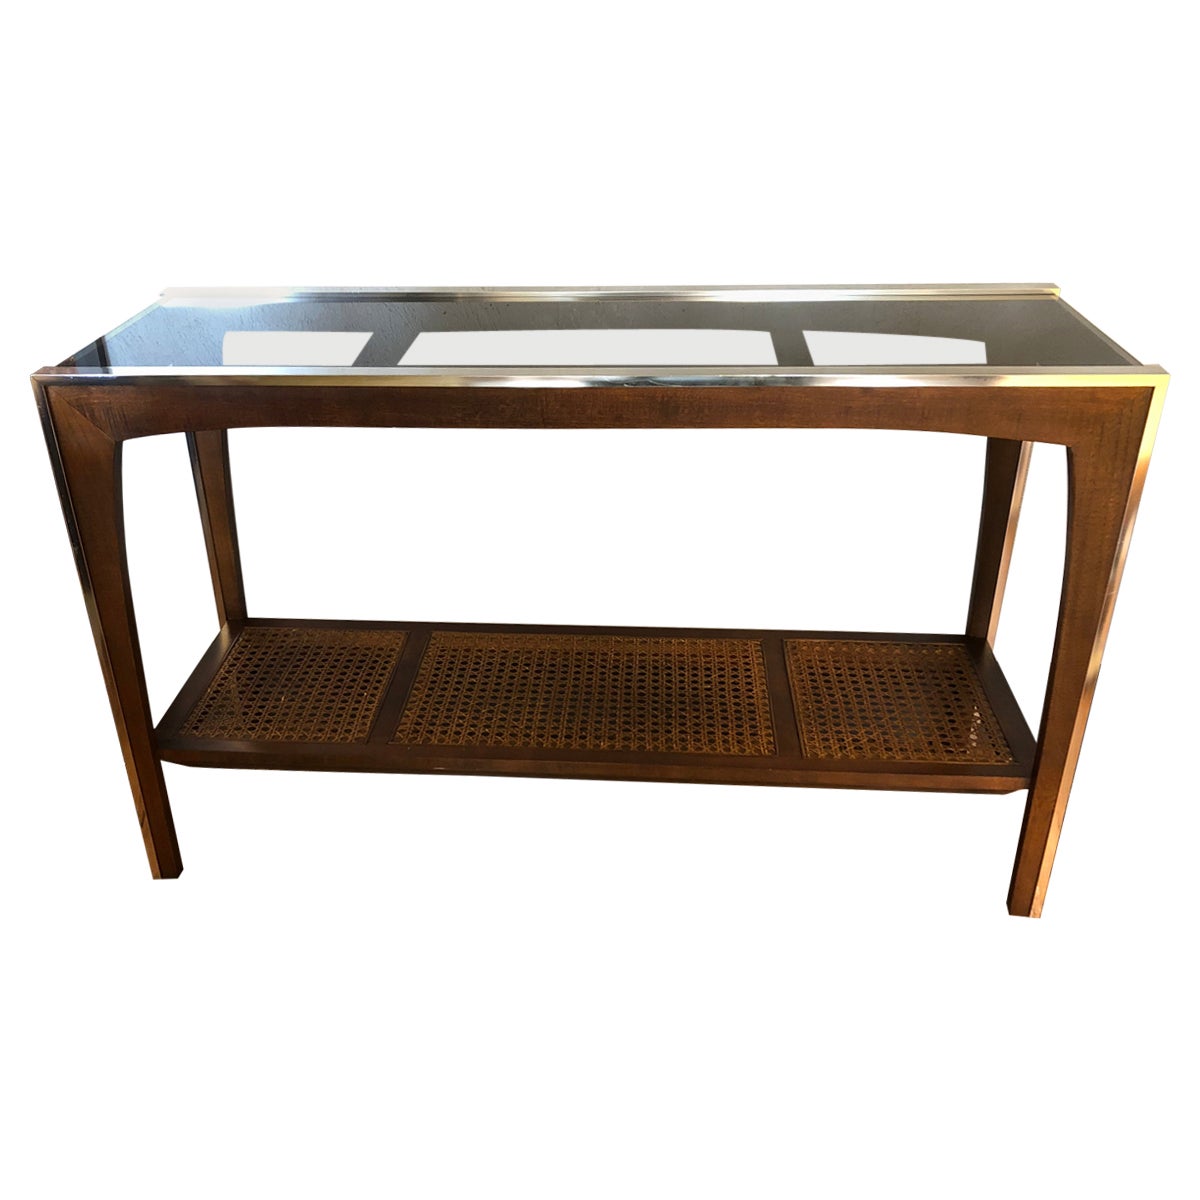 Table console sophistiquée et élégante en bois, chrome et verre